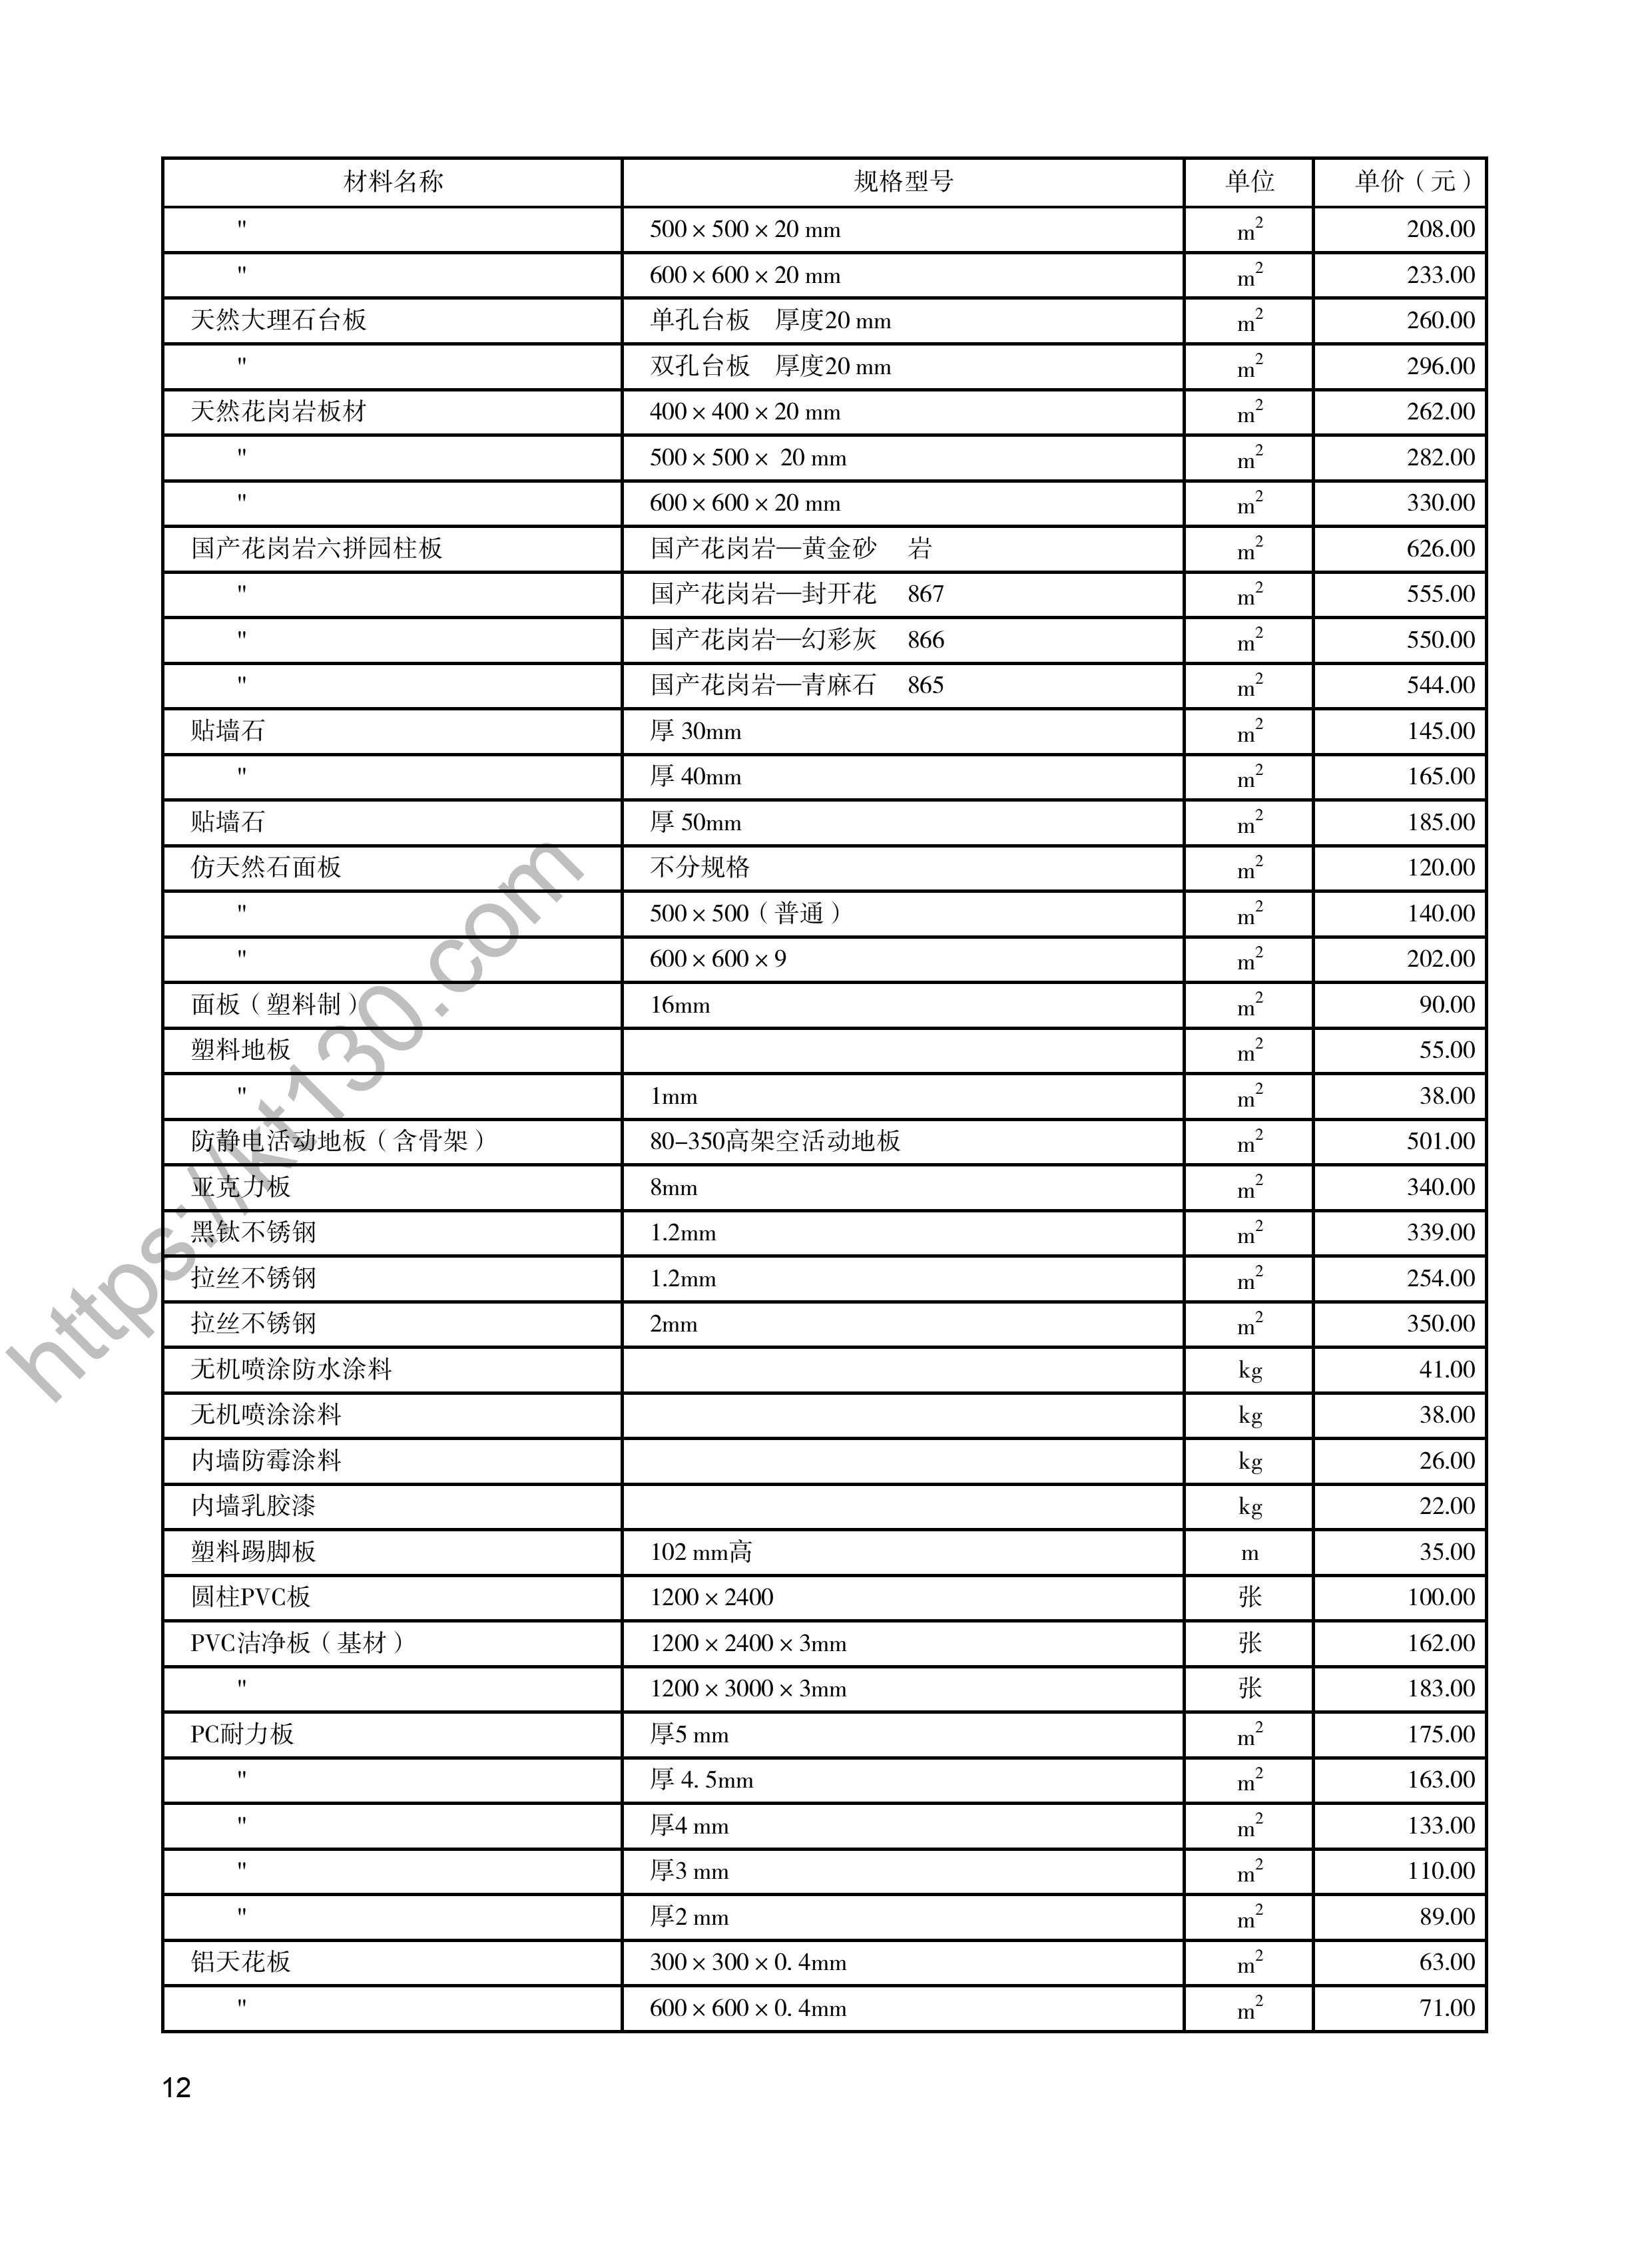 陕西省2022年2月建筑材料价_装饰材料_47949